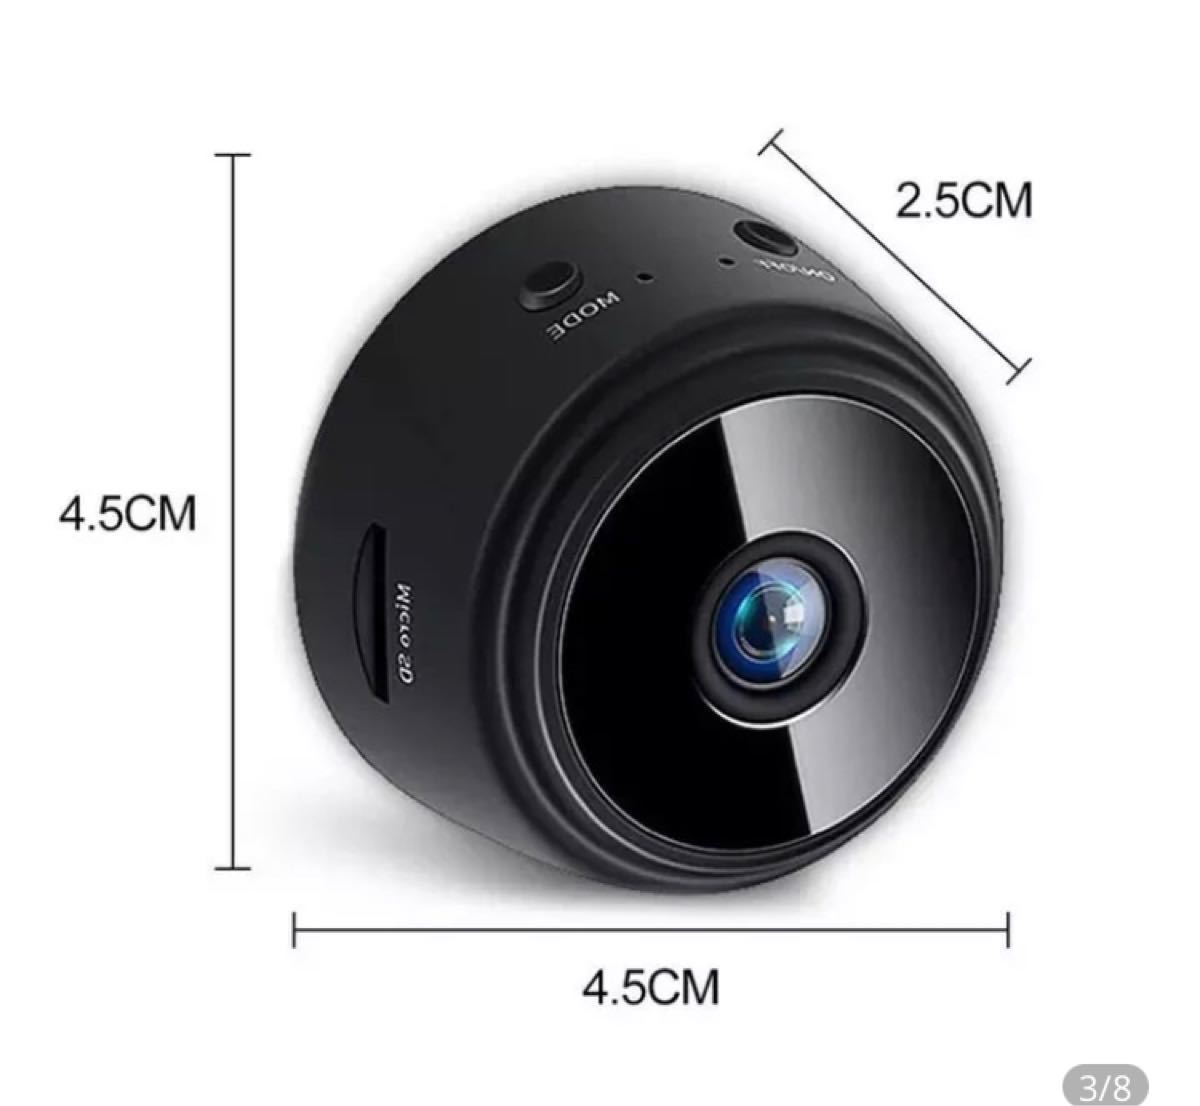 【2022最新版】超小型防犯カメラ 1080P長時間録画 遠隔操作O WiFi フルHD 防犯カメラ 監視カメラ 高画質